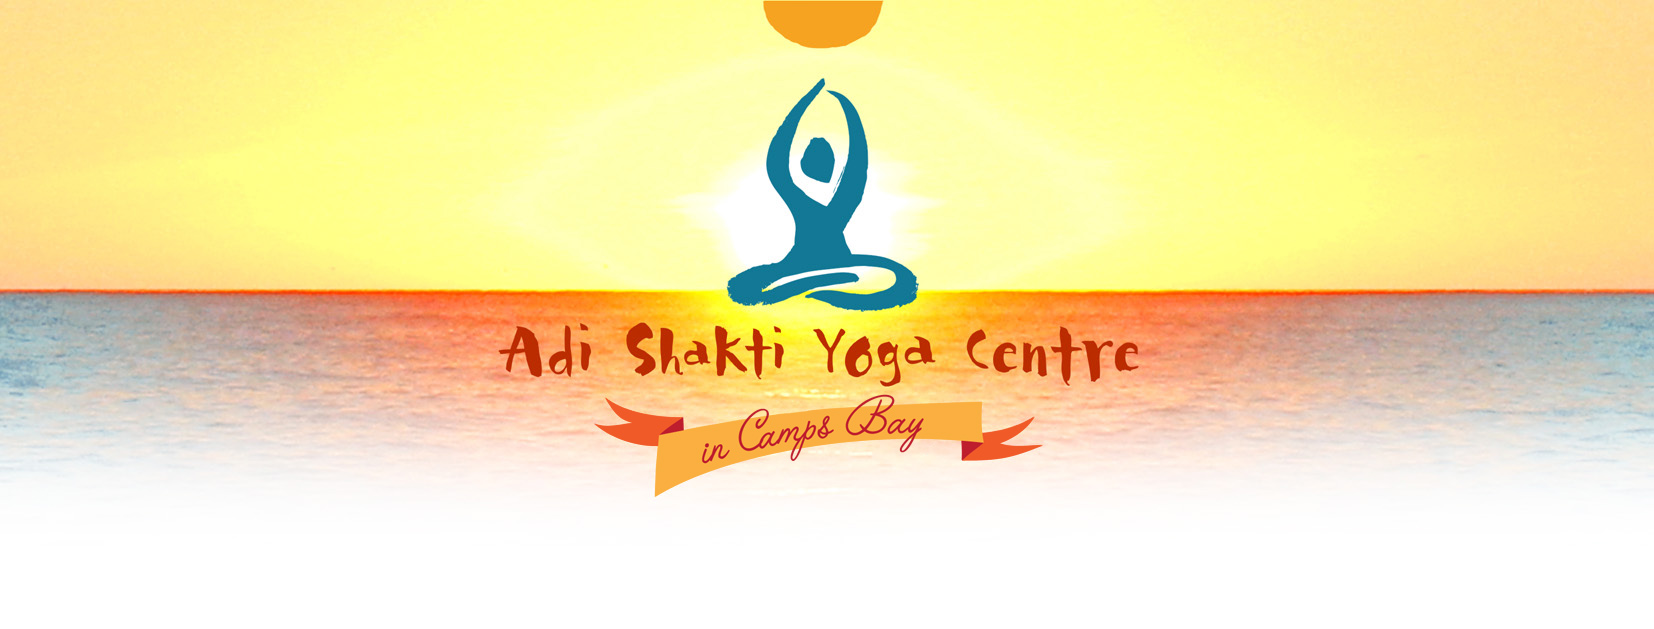 Adi Shakti Yoga Studio Image